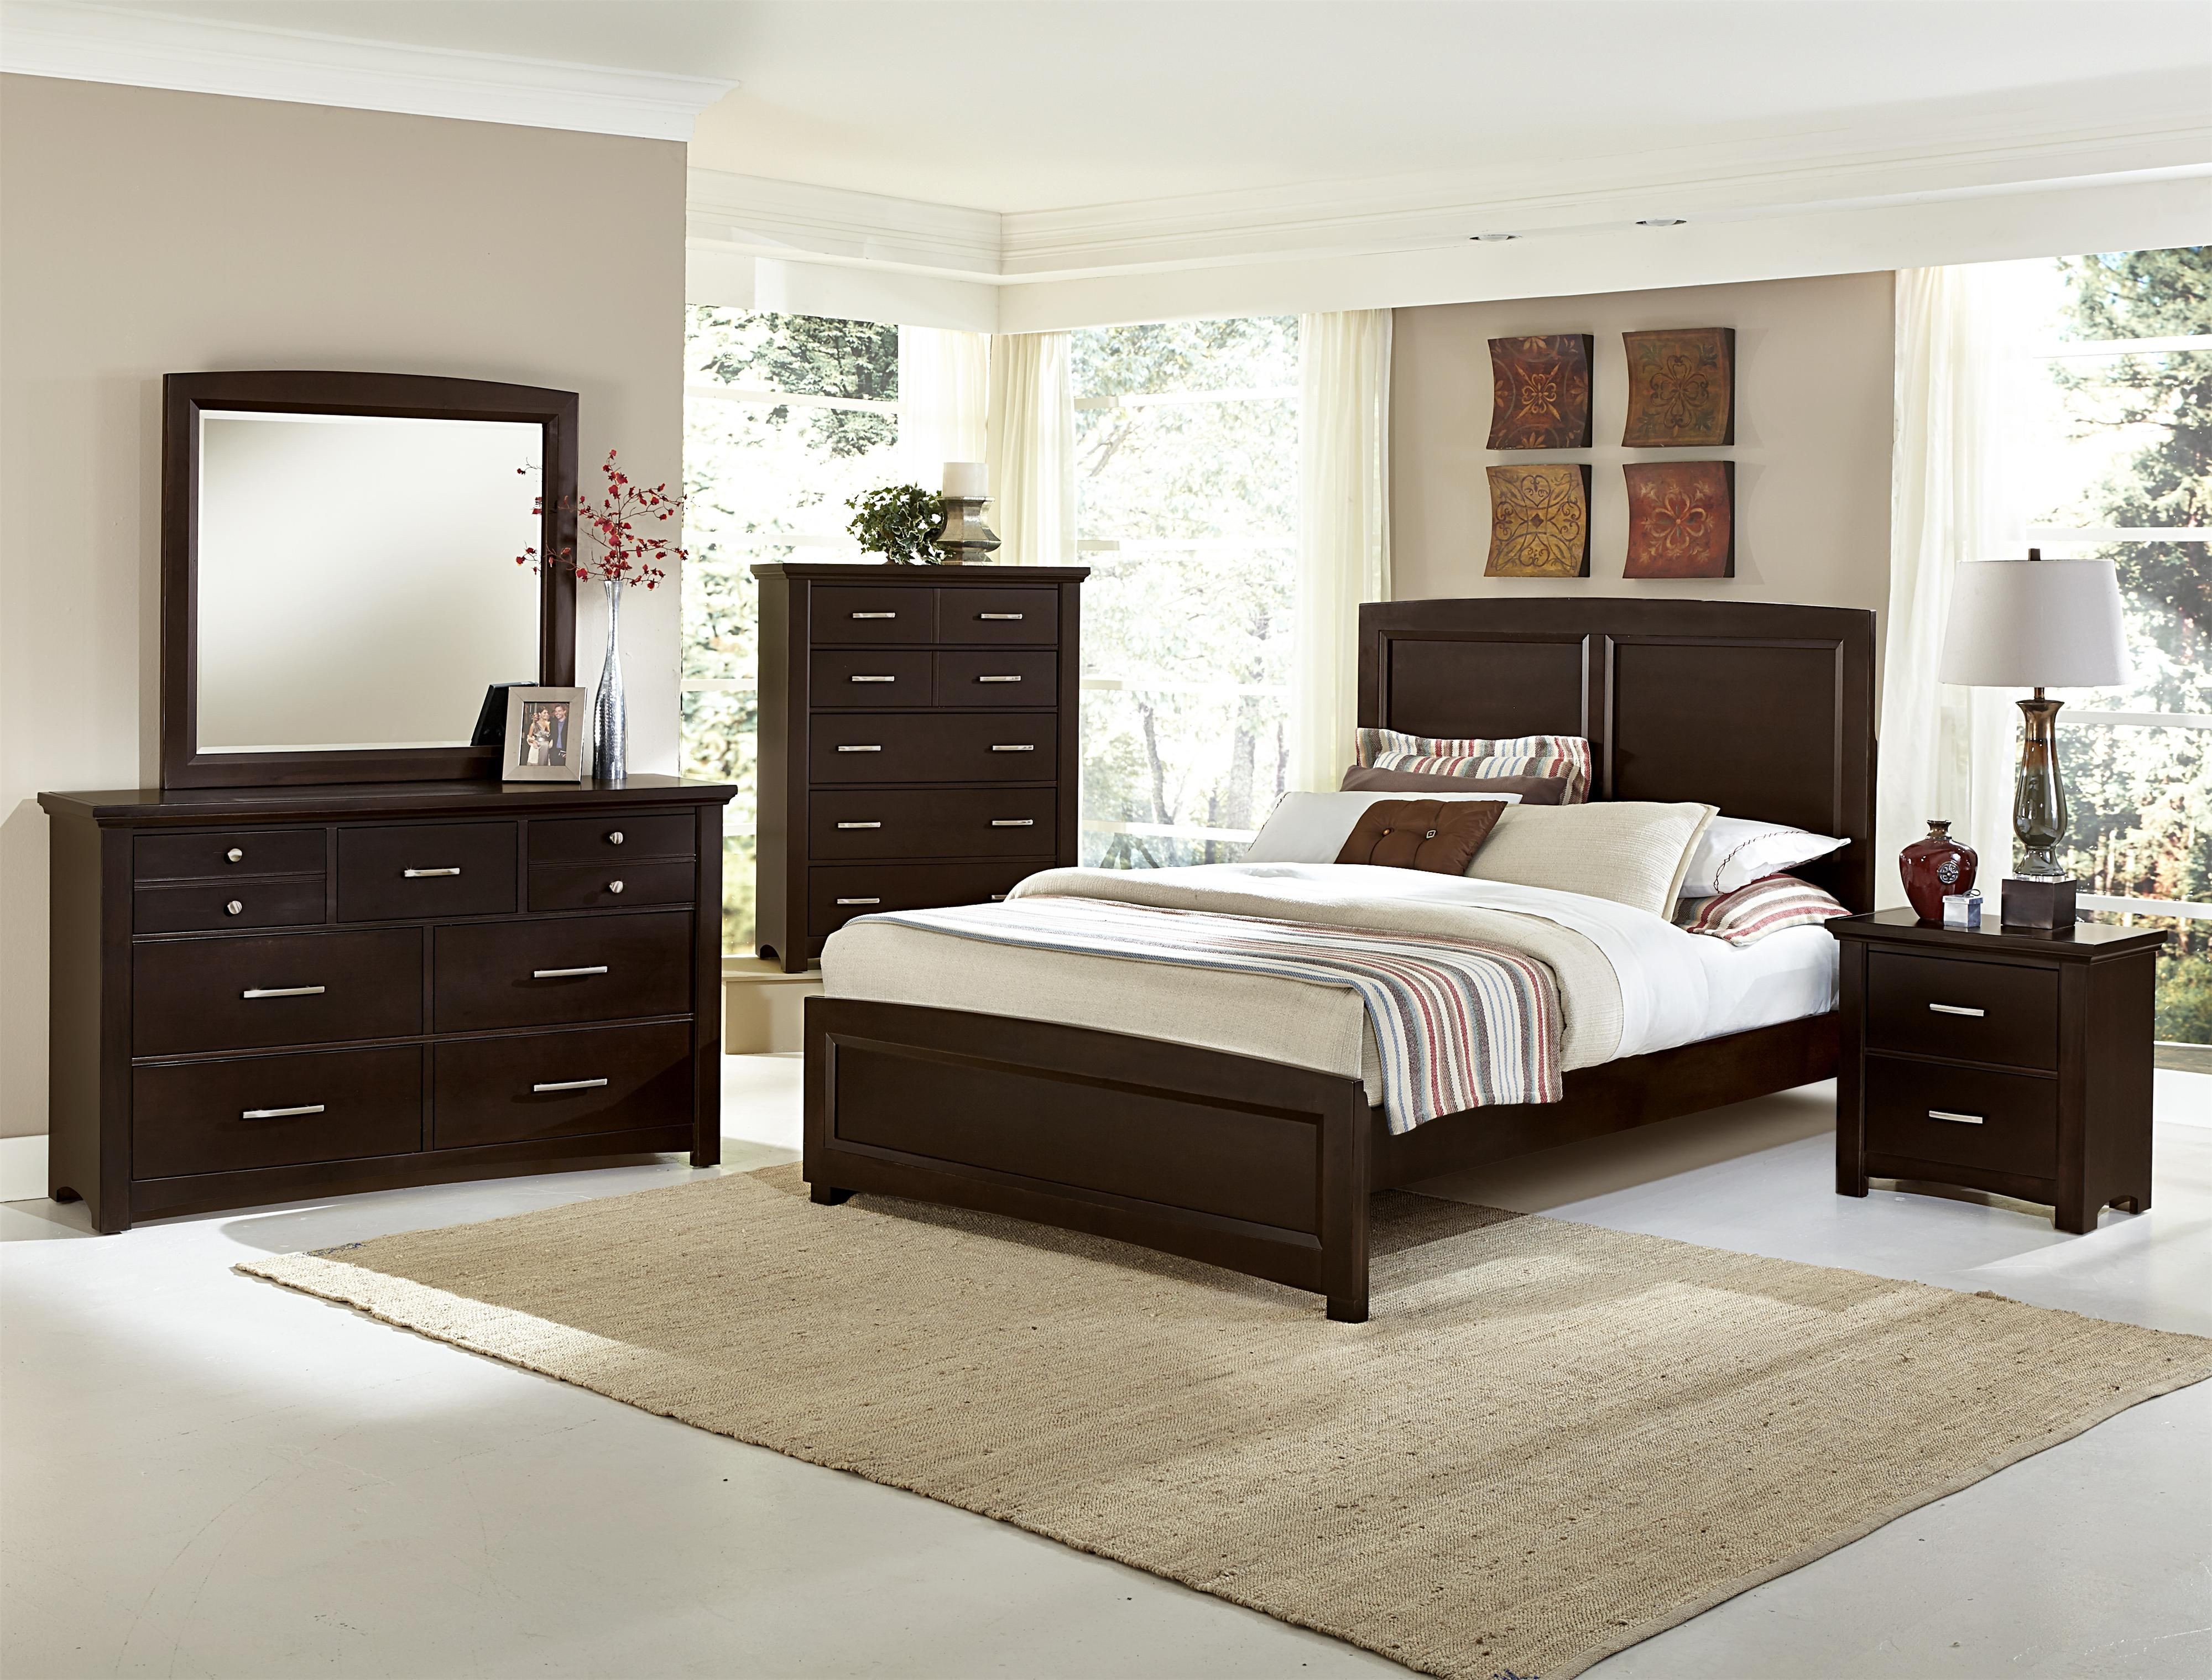 bassett bedroom furniture granite